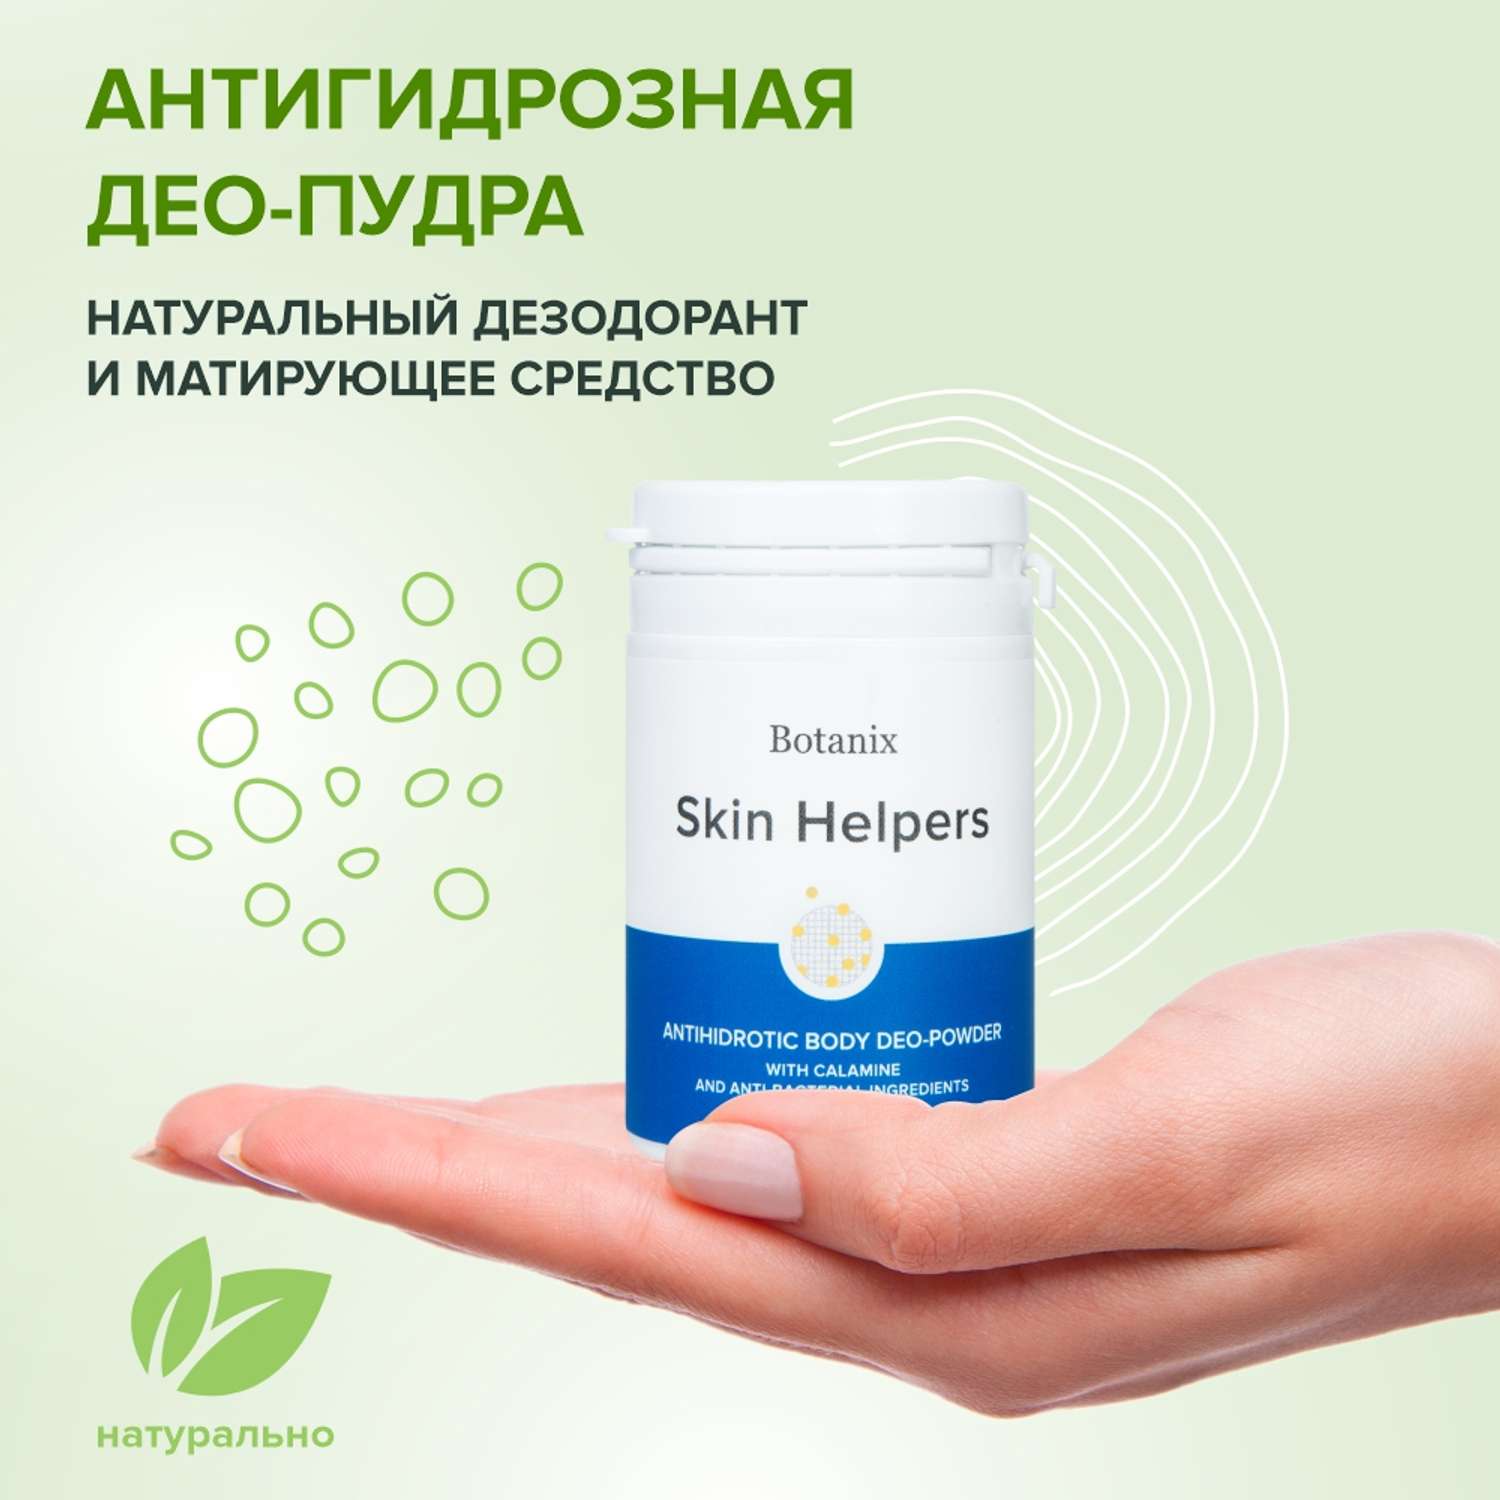 Антигидрозная део-пудра Skin Helpers для тела с каламином и антибактериальными компонентами 50 г - фото 2